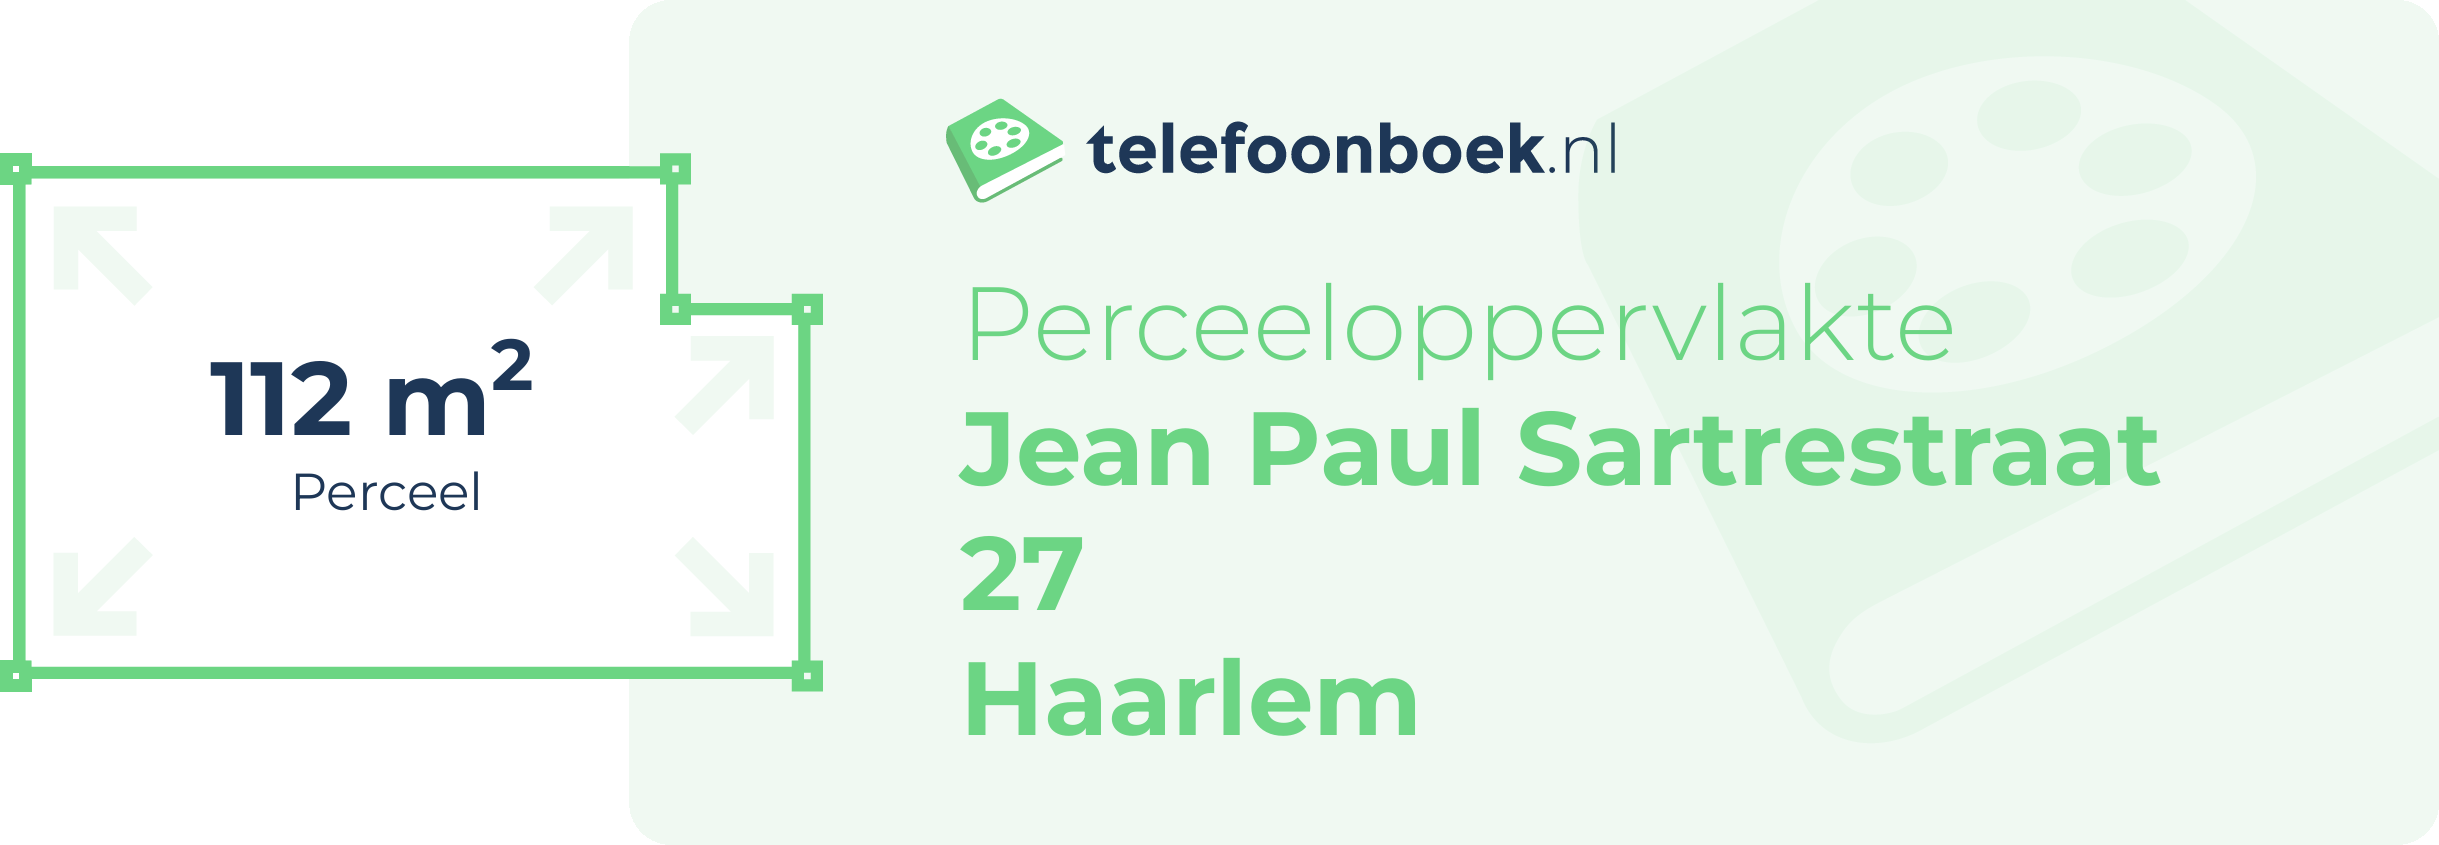 Perceeloppervlakte Jean Paul Sartrestraat 27 Haarlem